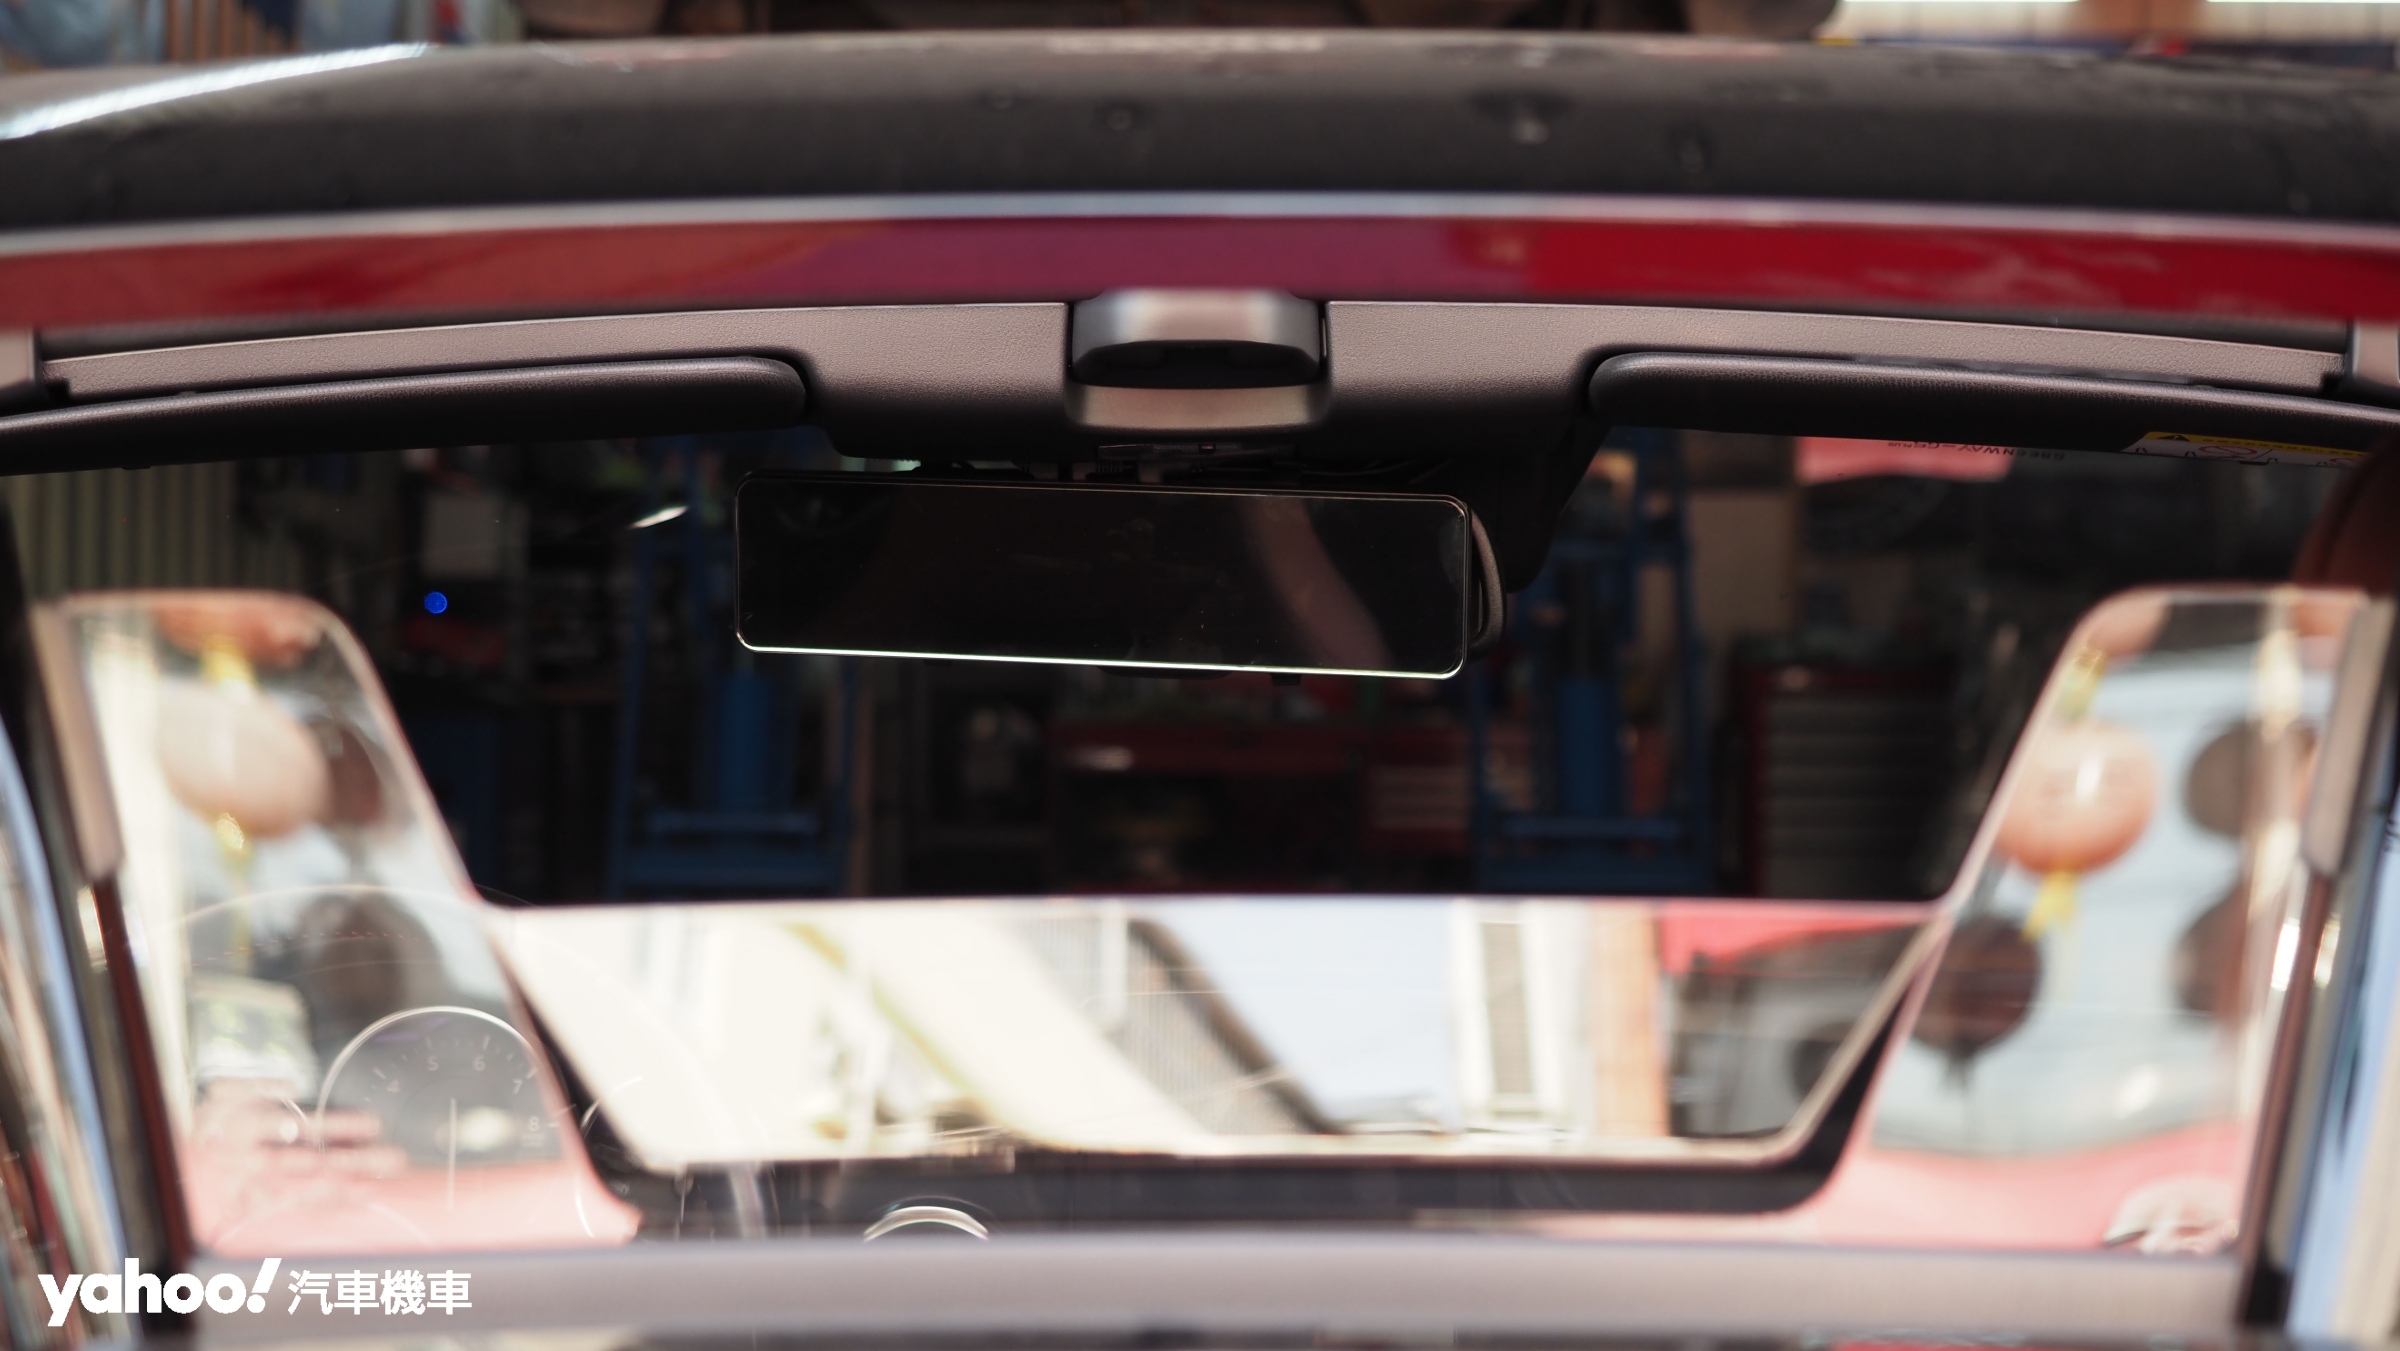 大面積鏡面能完整覆蓋原有的車內後視鏡，在未開機時也可提供駕駛最佳後方視野。